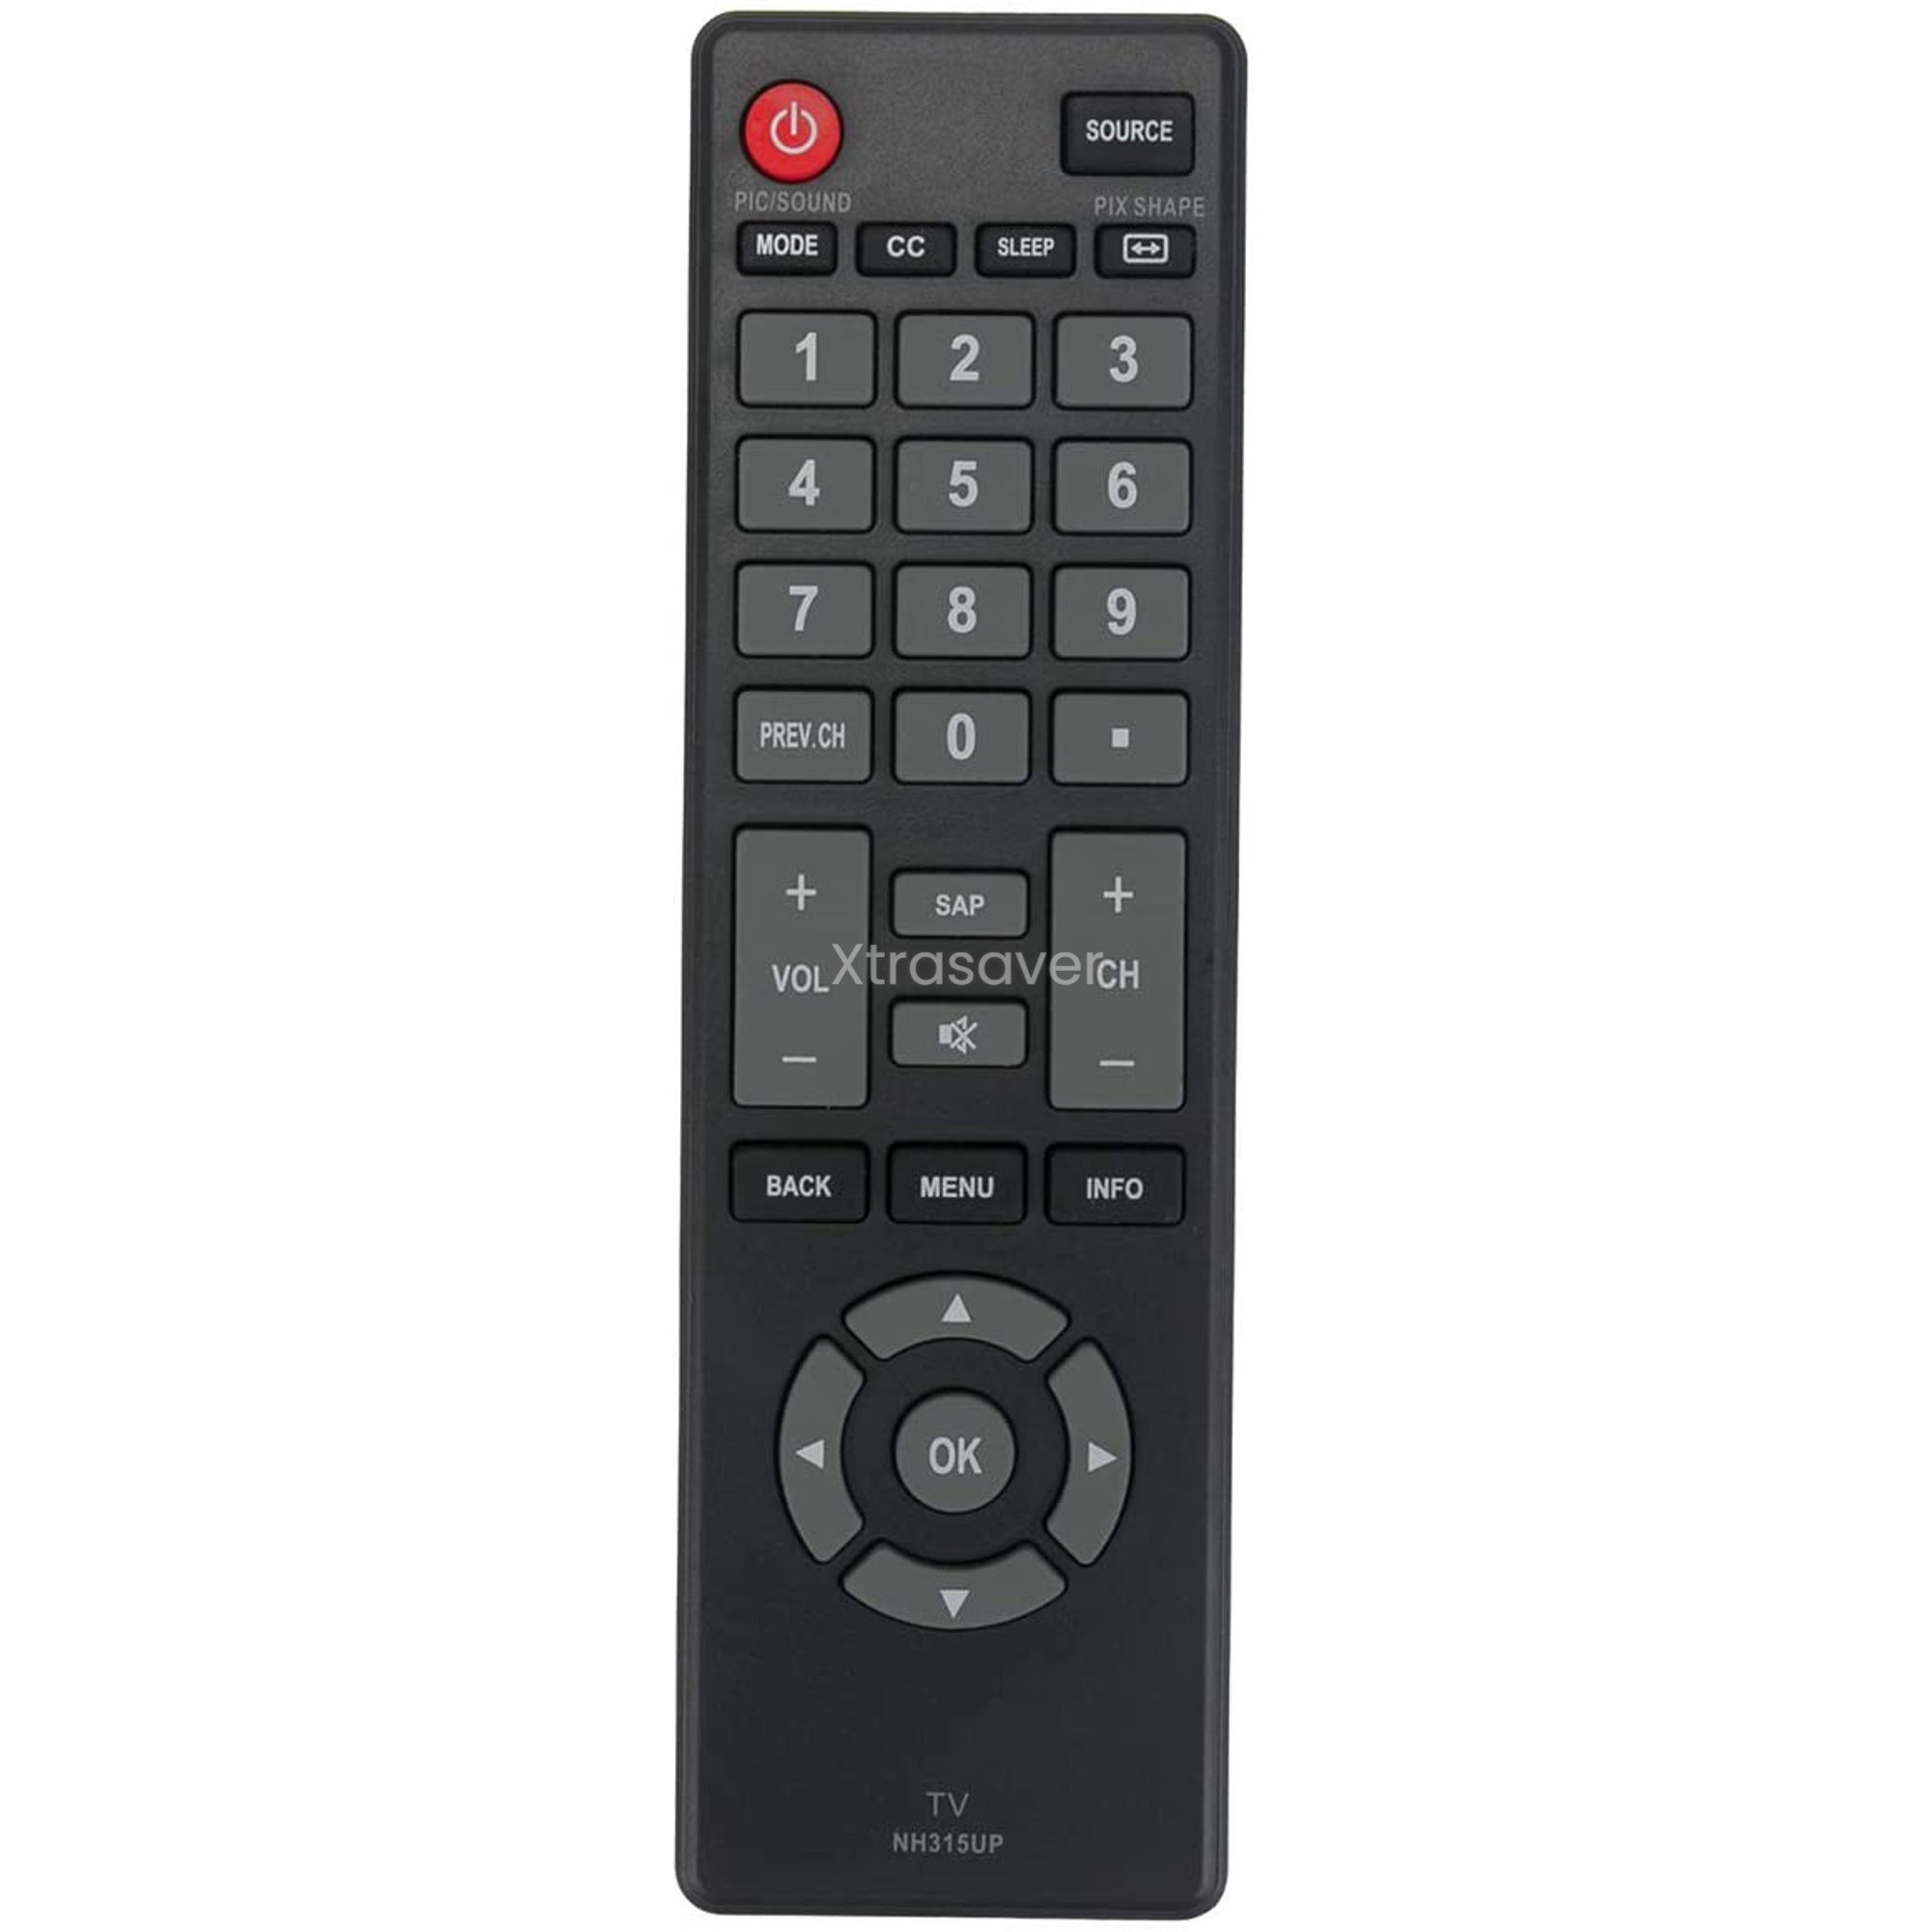 Sanyo Remote, Sanyo TV Codes